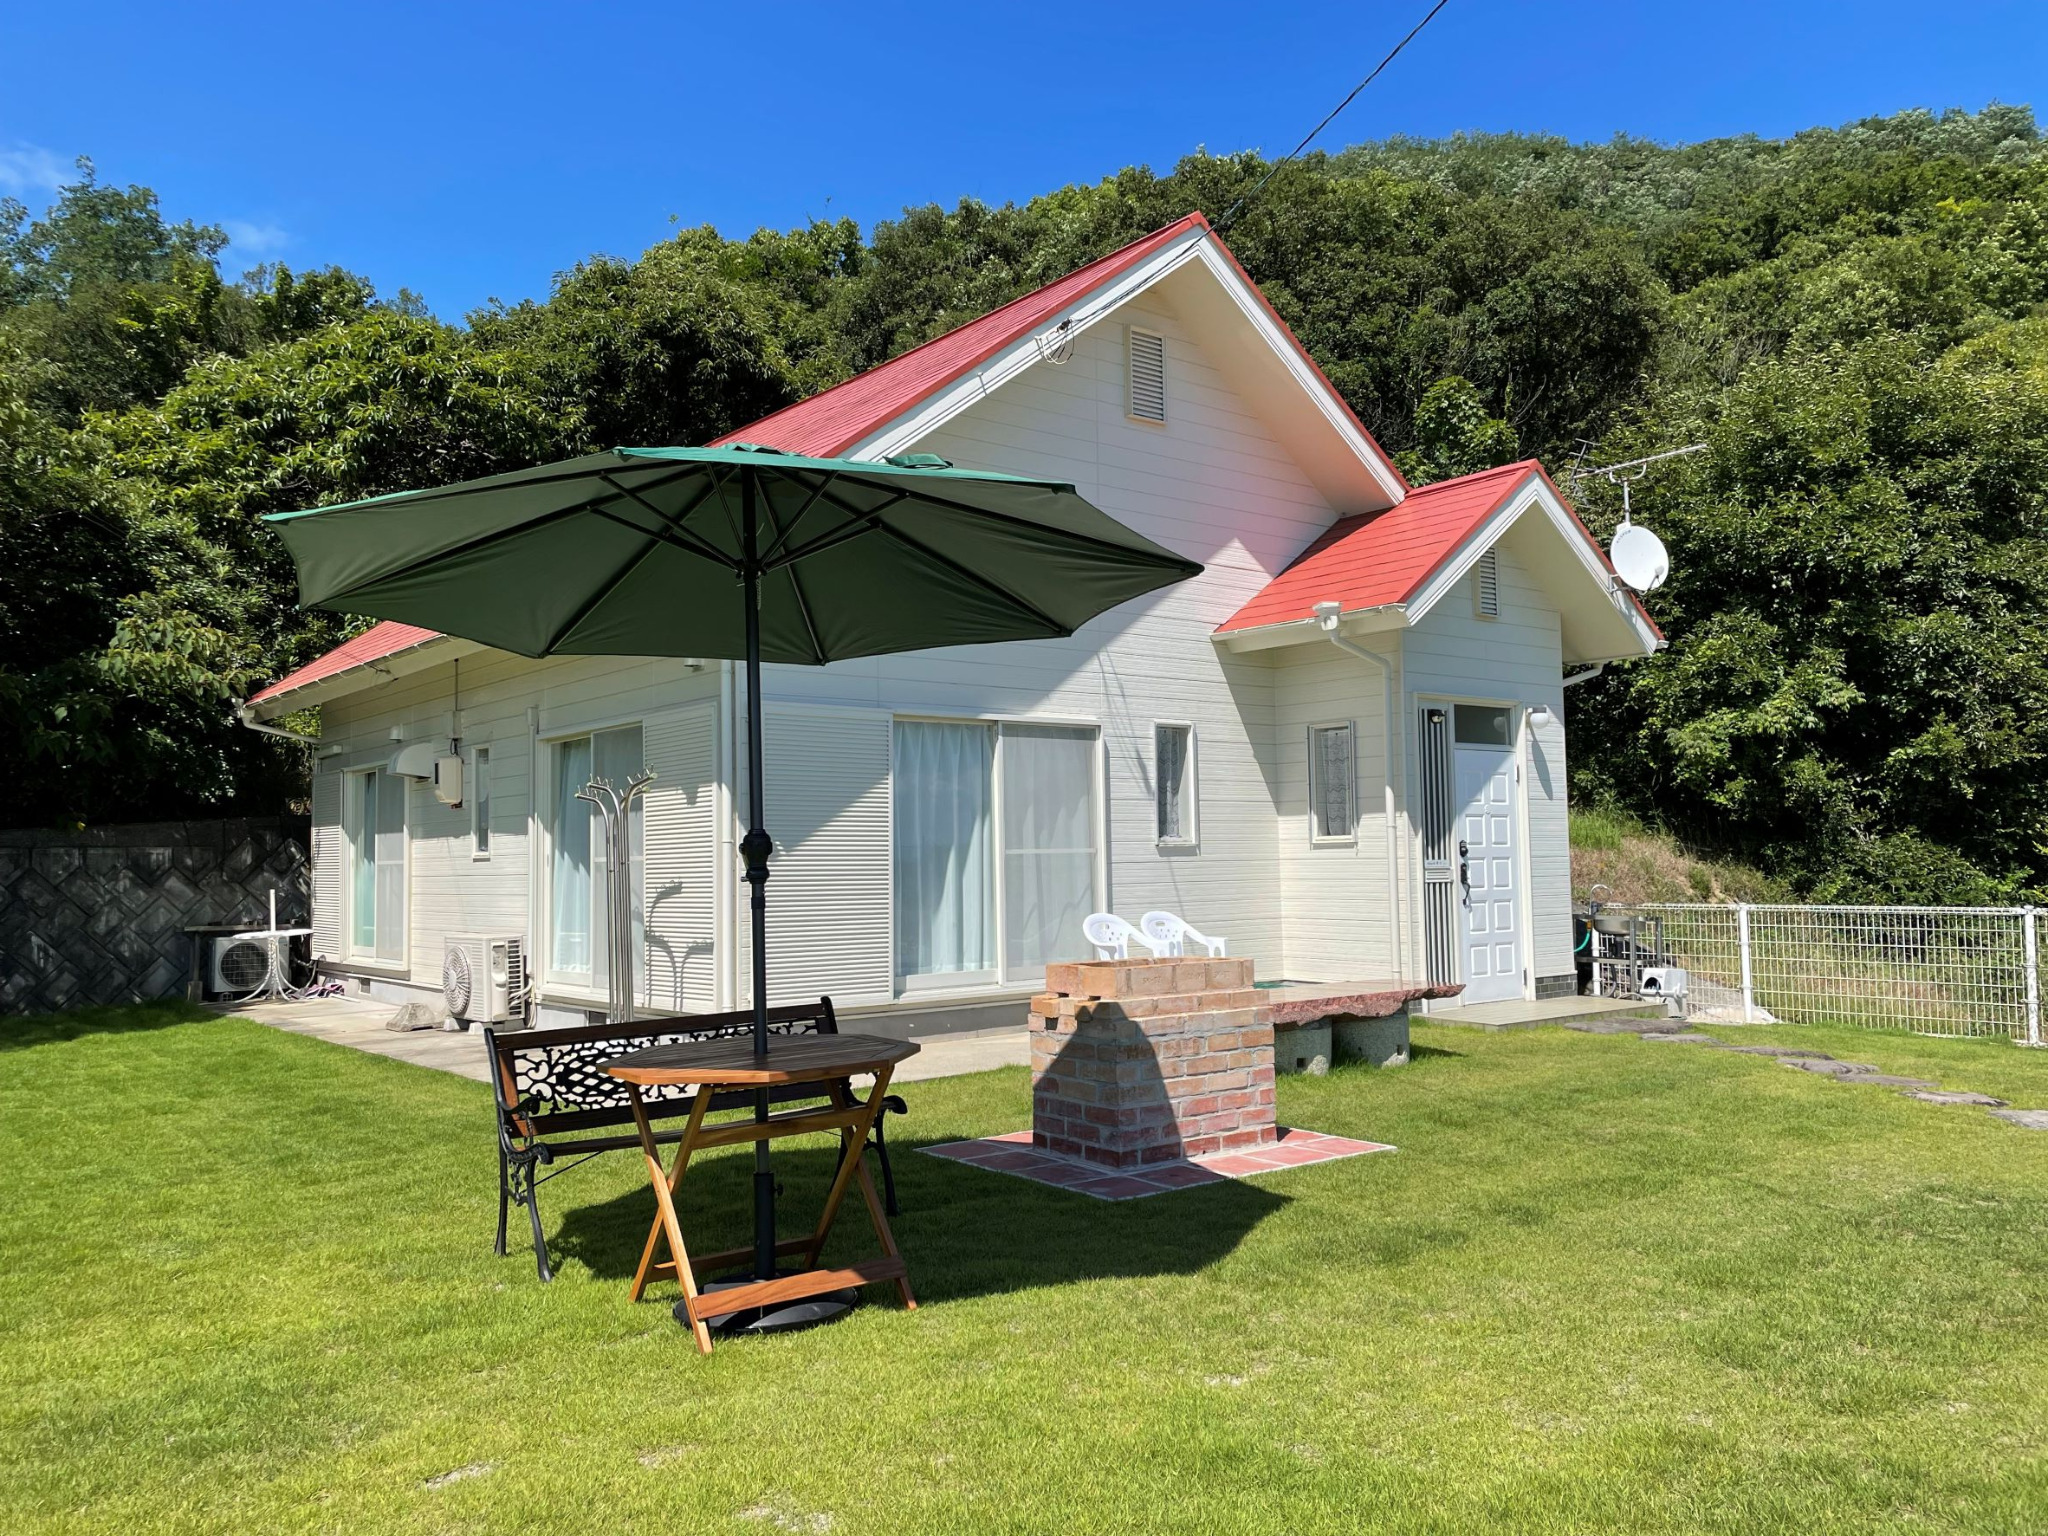 小豆島で山と海に囲まれた1軒屋。誰にも邪魔されないプライベート空間。リニューアルオープン!